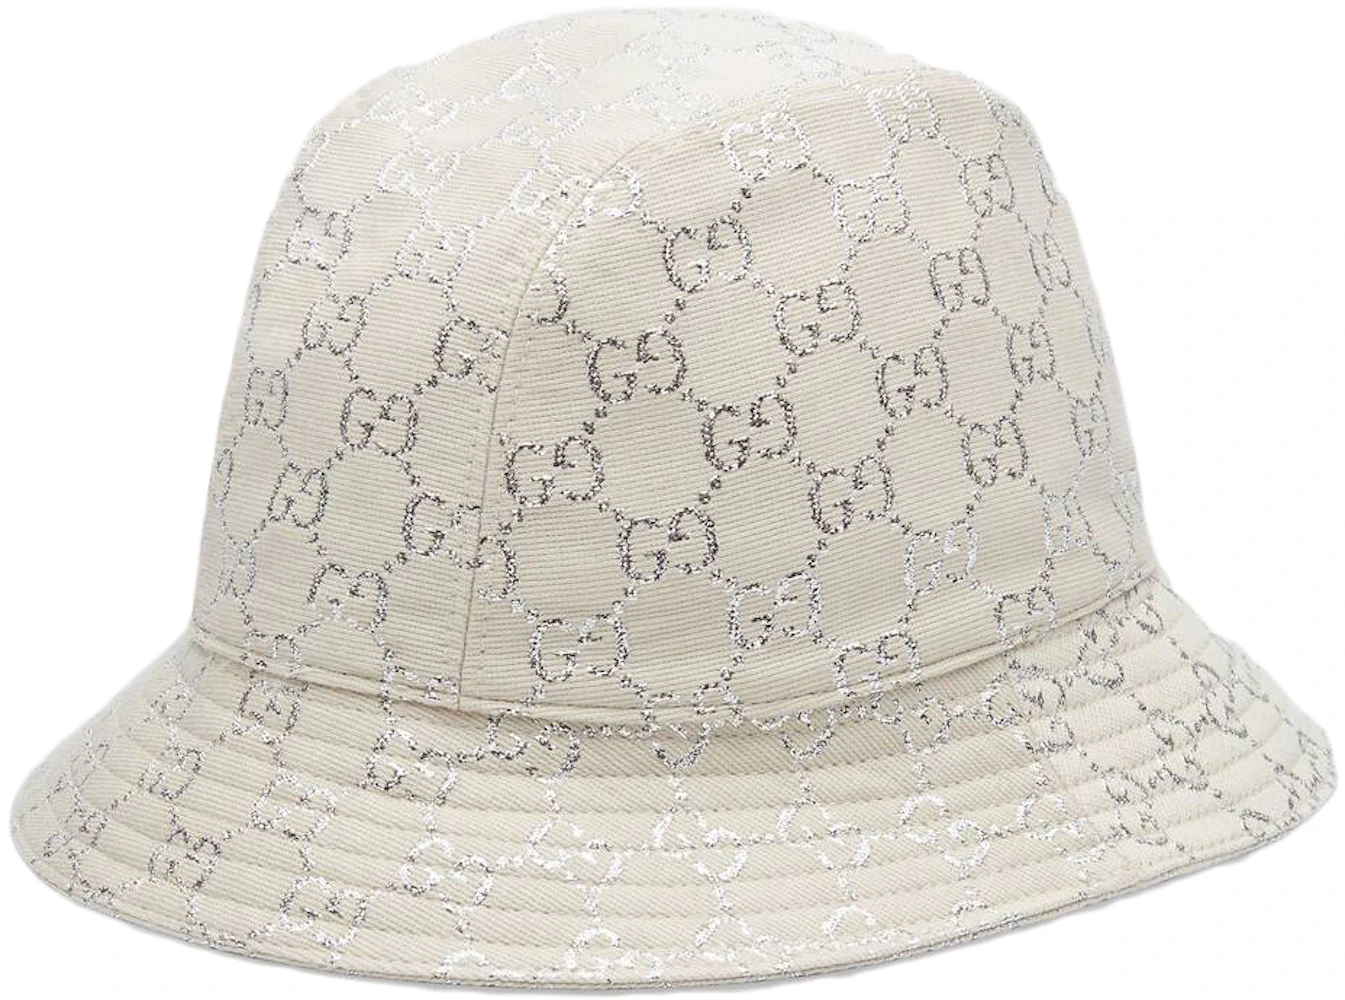 Gucci Guccissima Canvas Bucket Hat